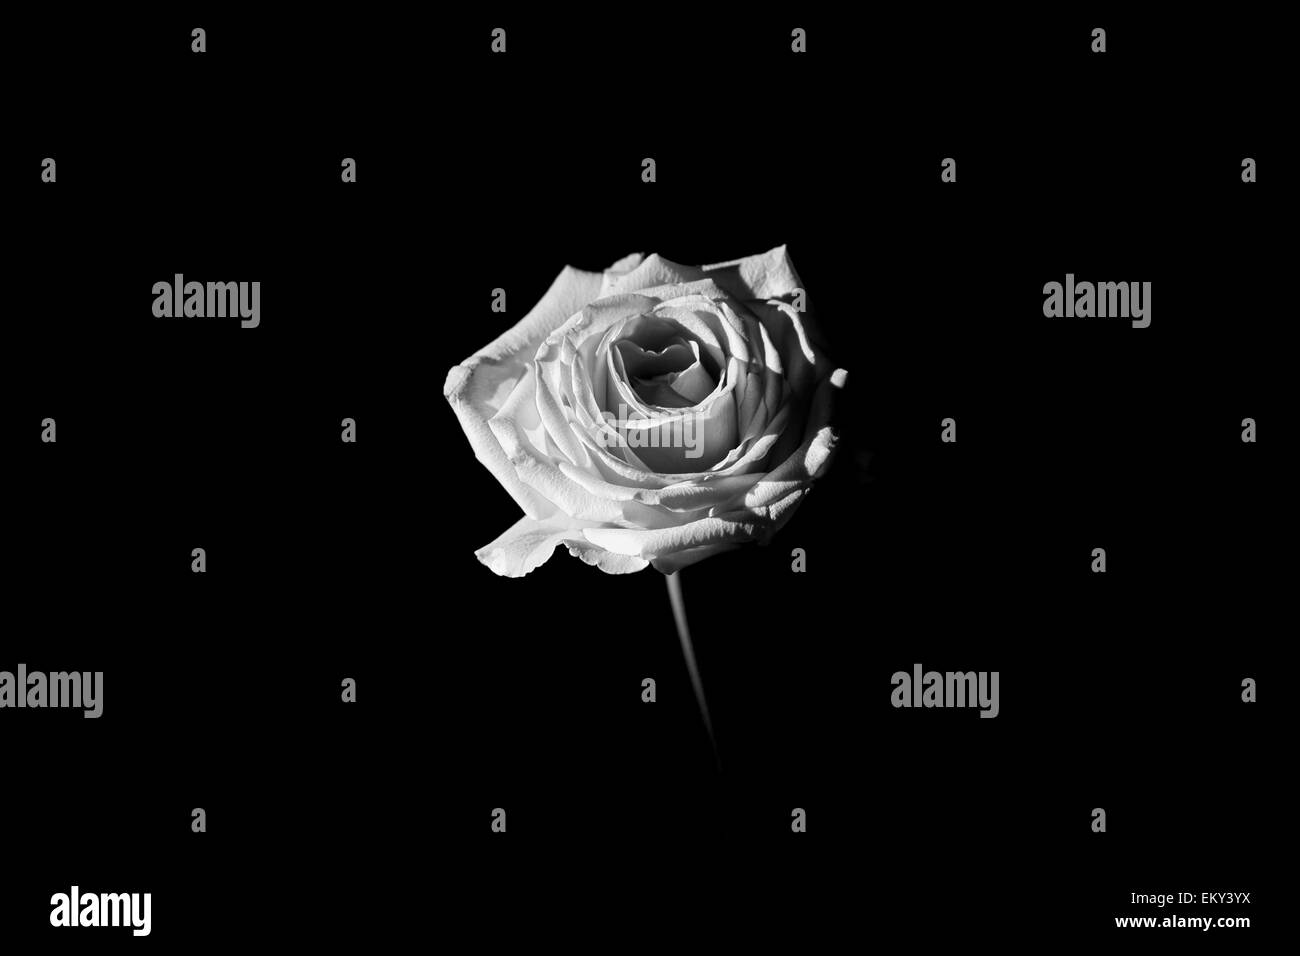 Esta es una rosa rodado en low key, blancos y negros. Tomado del invierno de 2014. Foto de stock